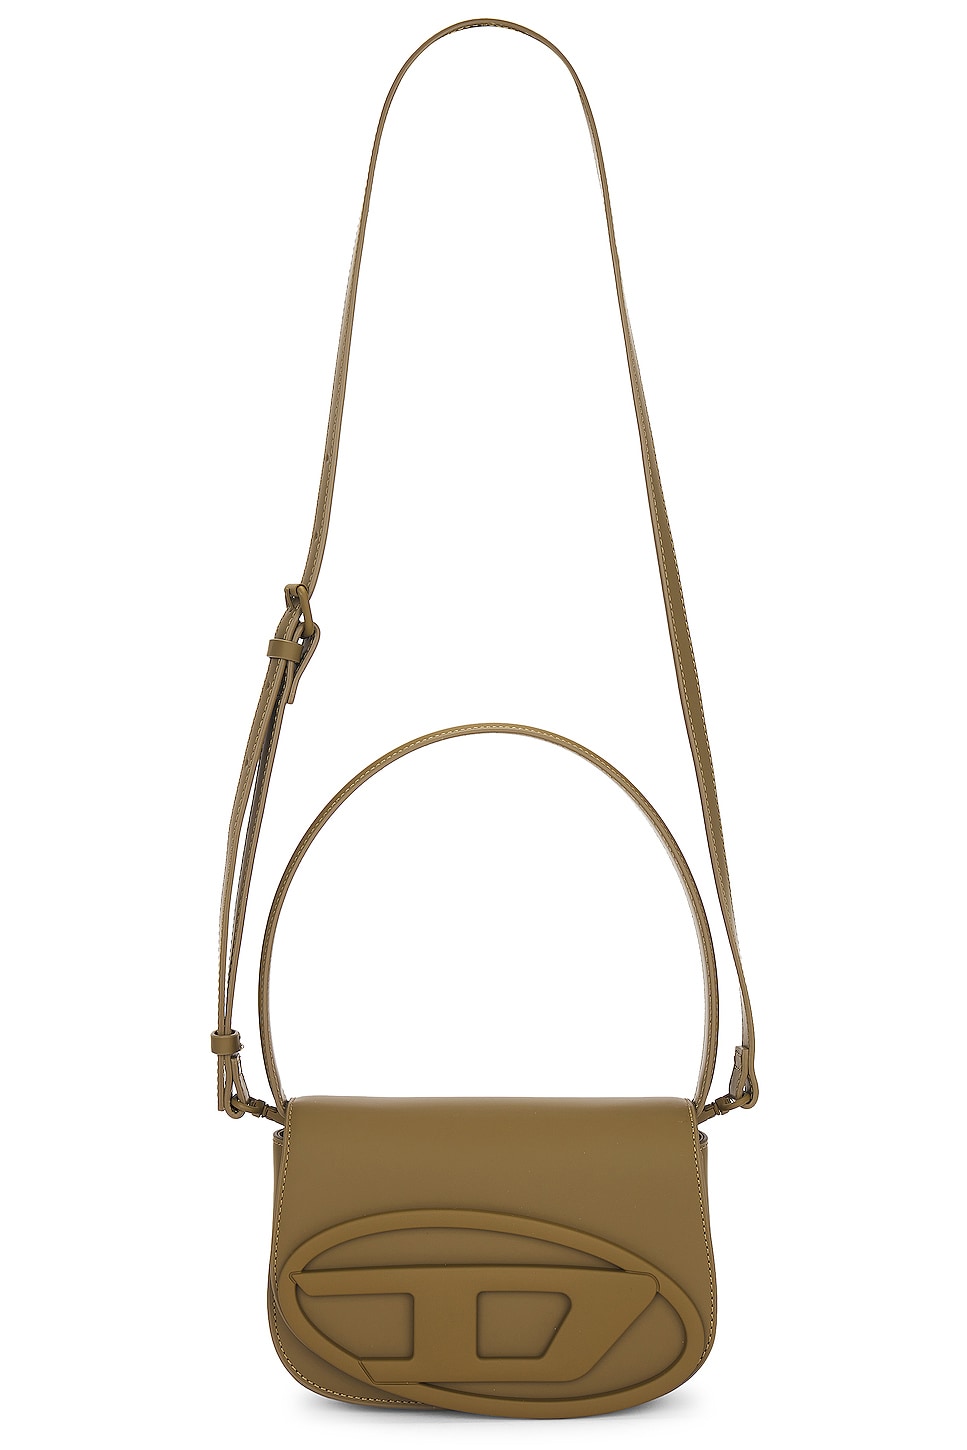 Loop & Chain Handbag in Brown